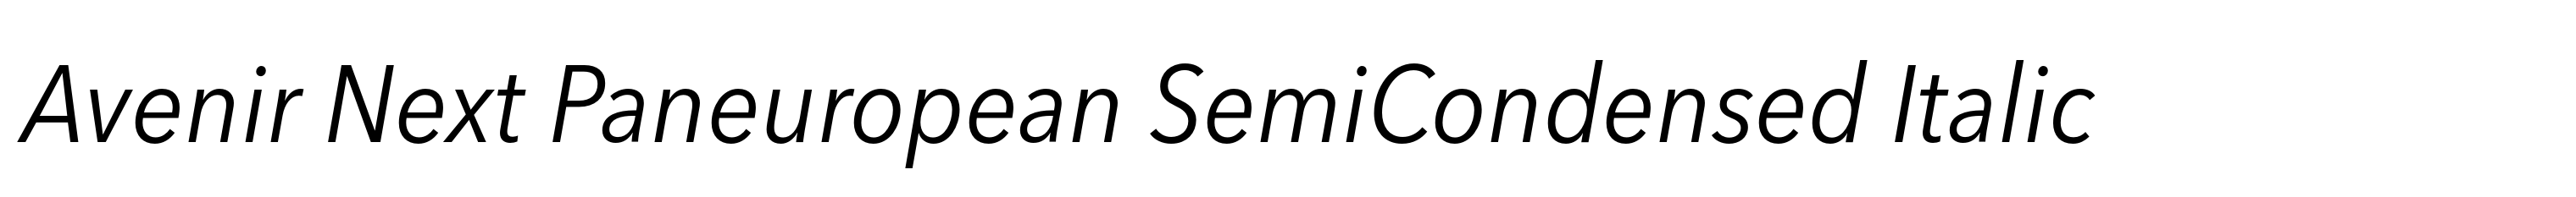 Avenir Next Paneuropean SemiCondensed Italic